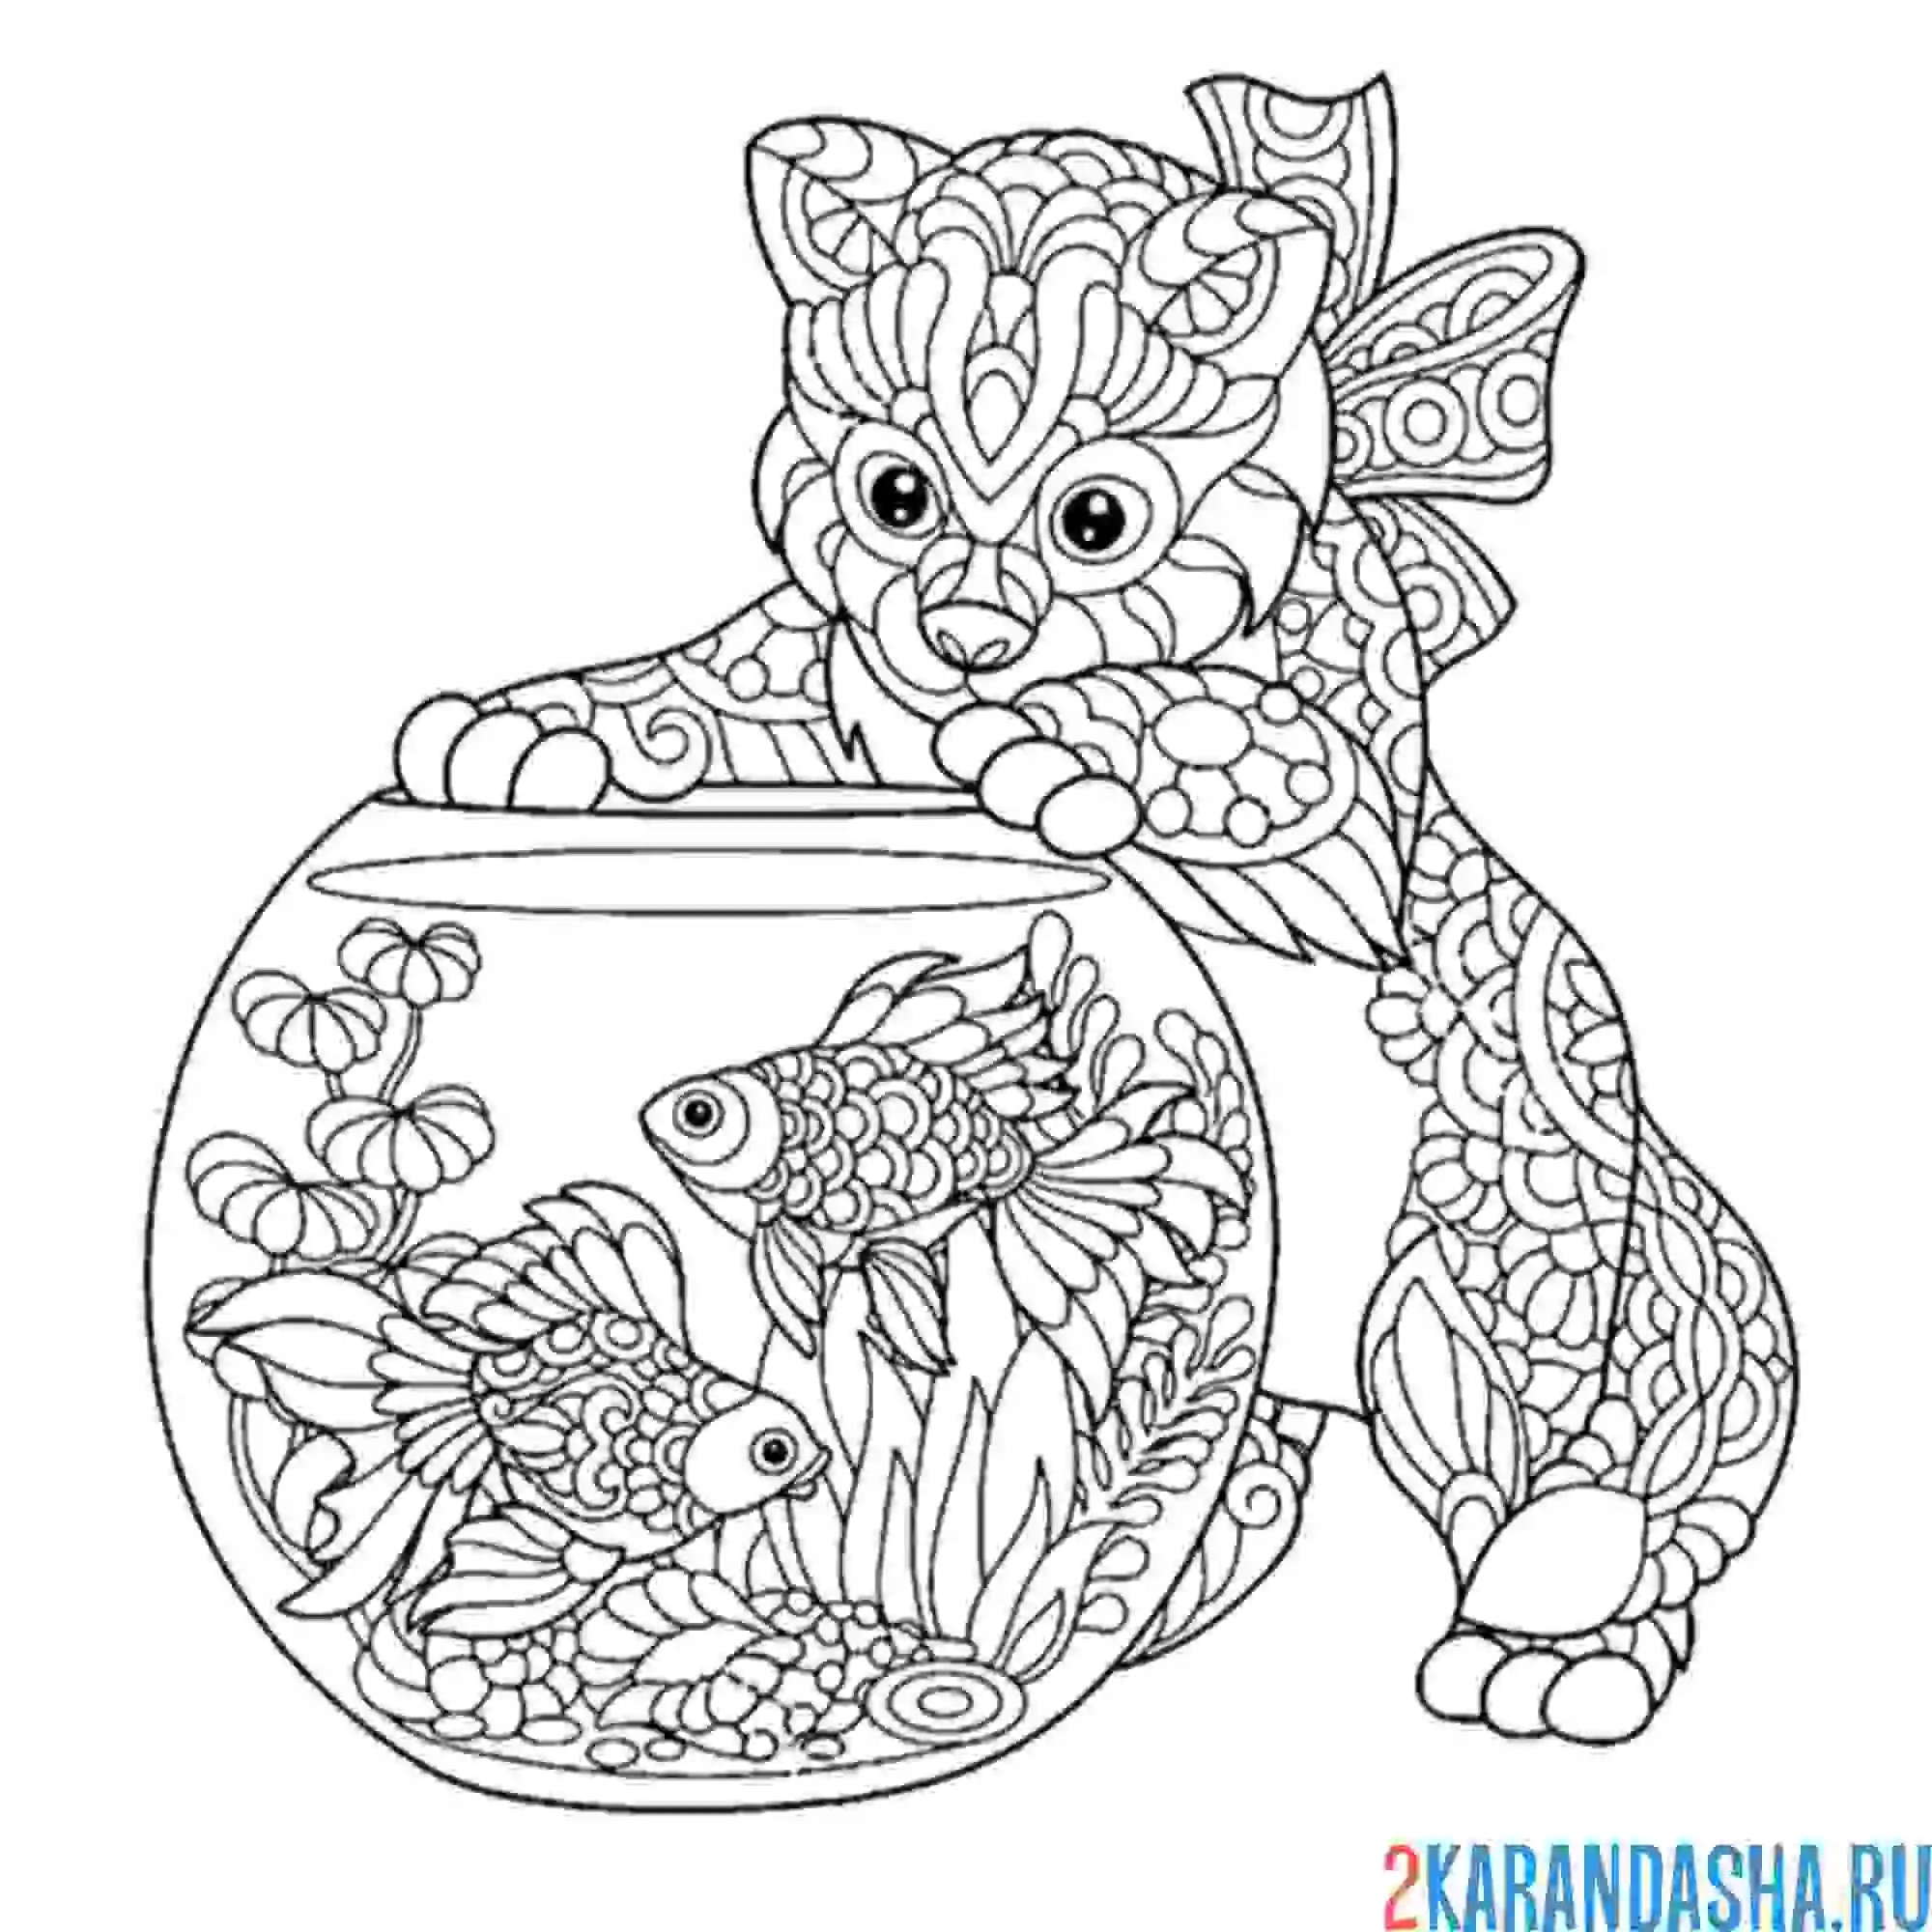 Раскраска кот антистресс аквариум